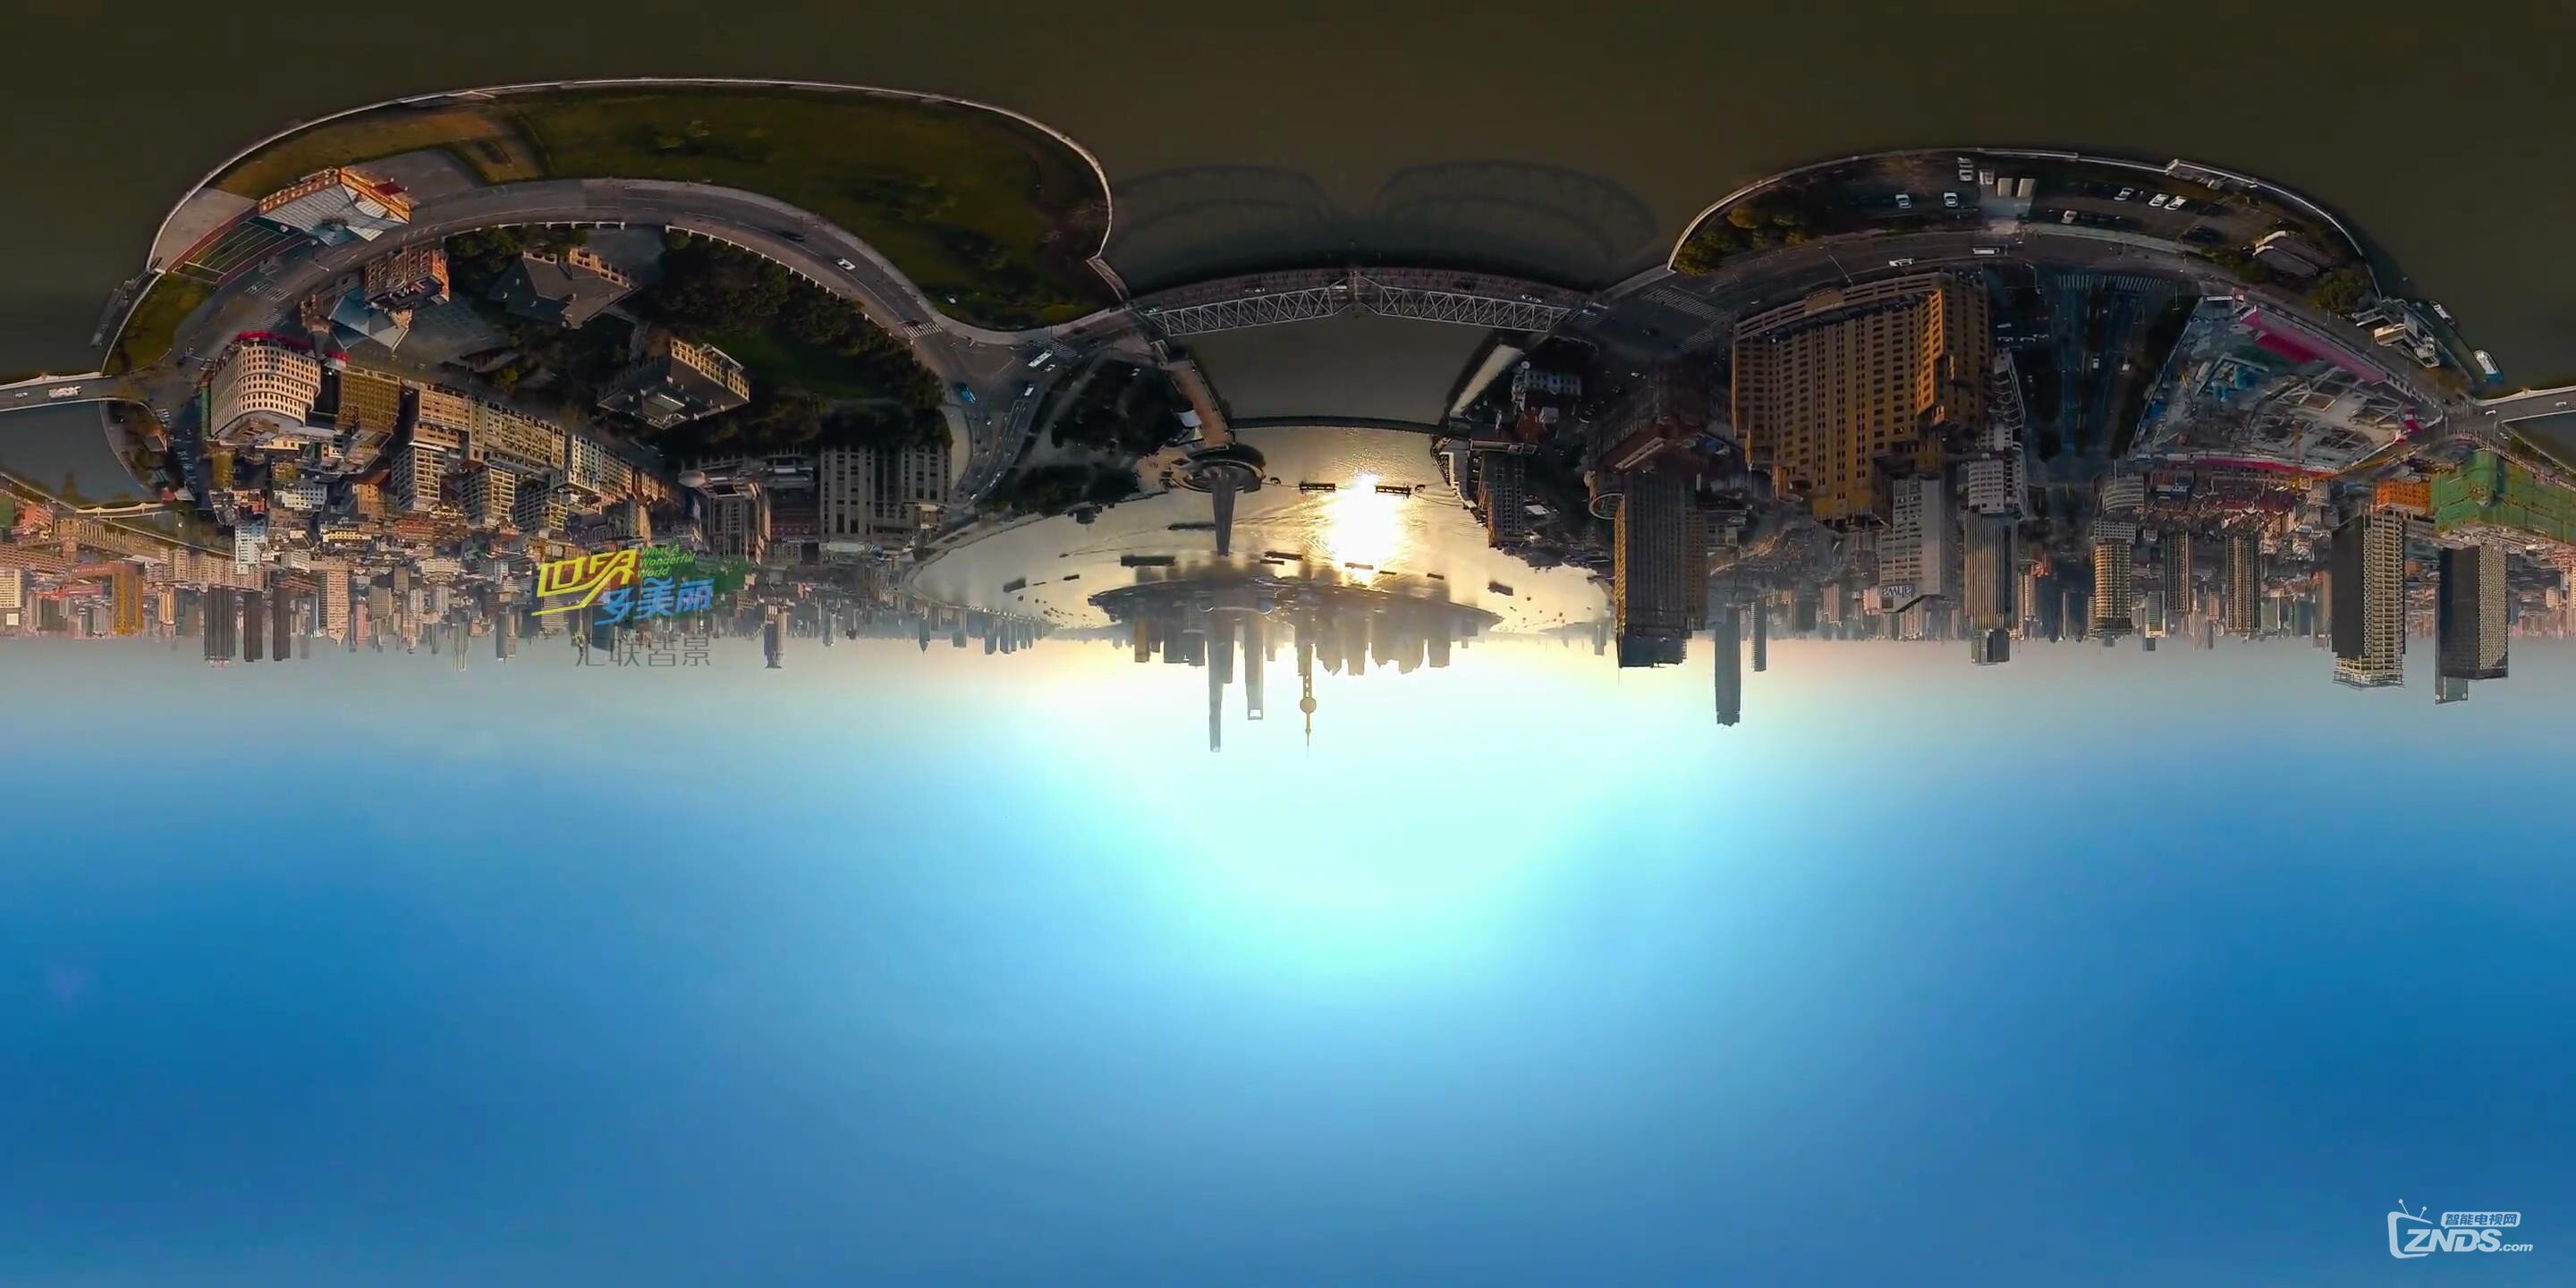 【360度VR全景视频】旅游卫视《世界多美丽